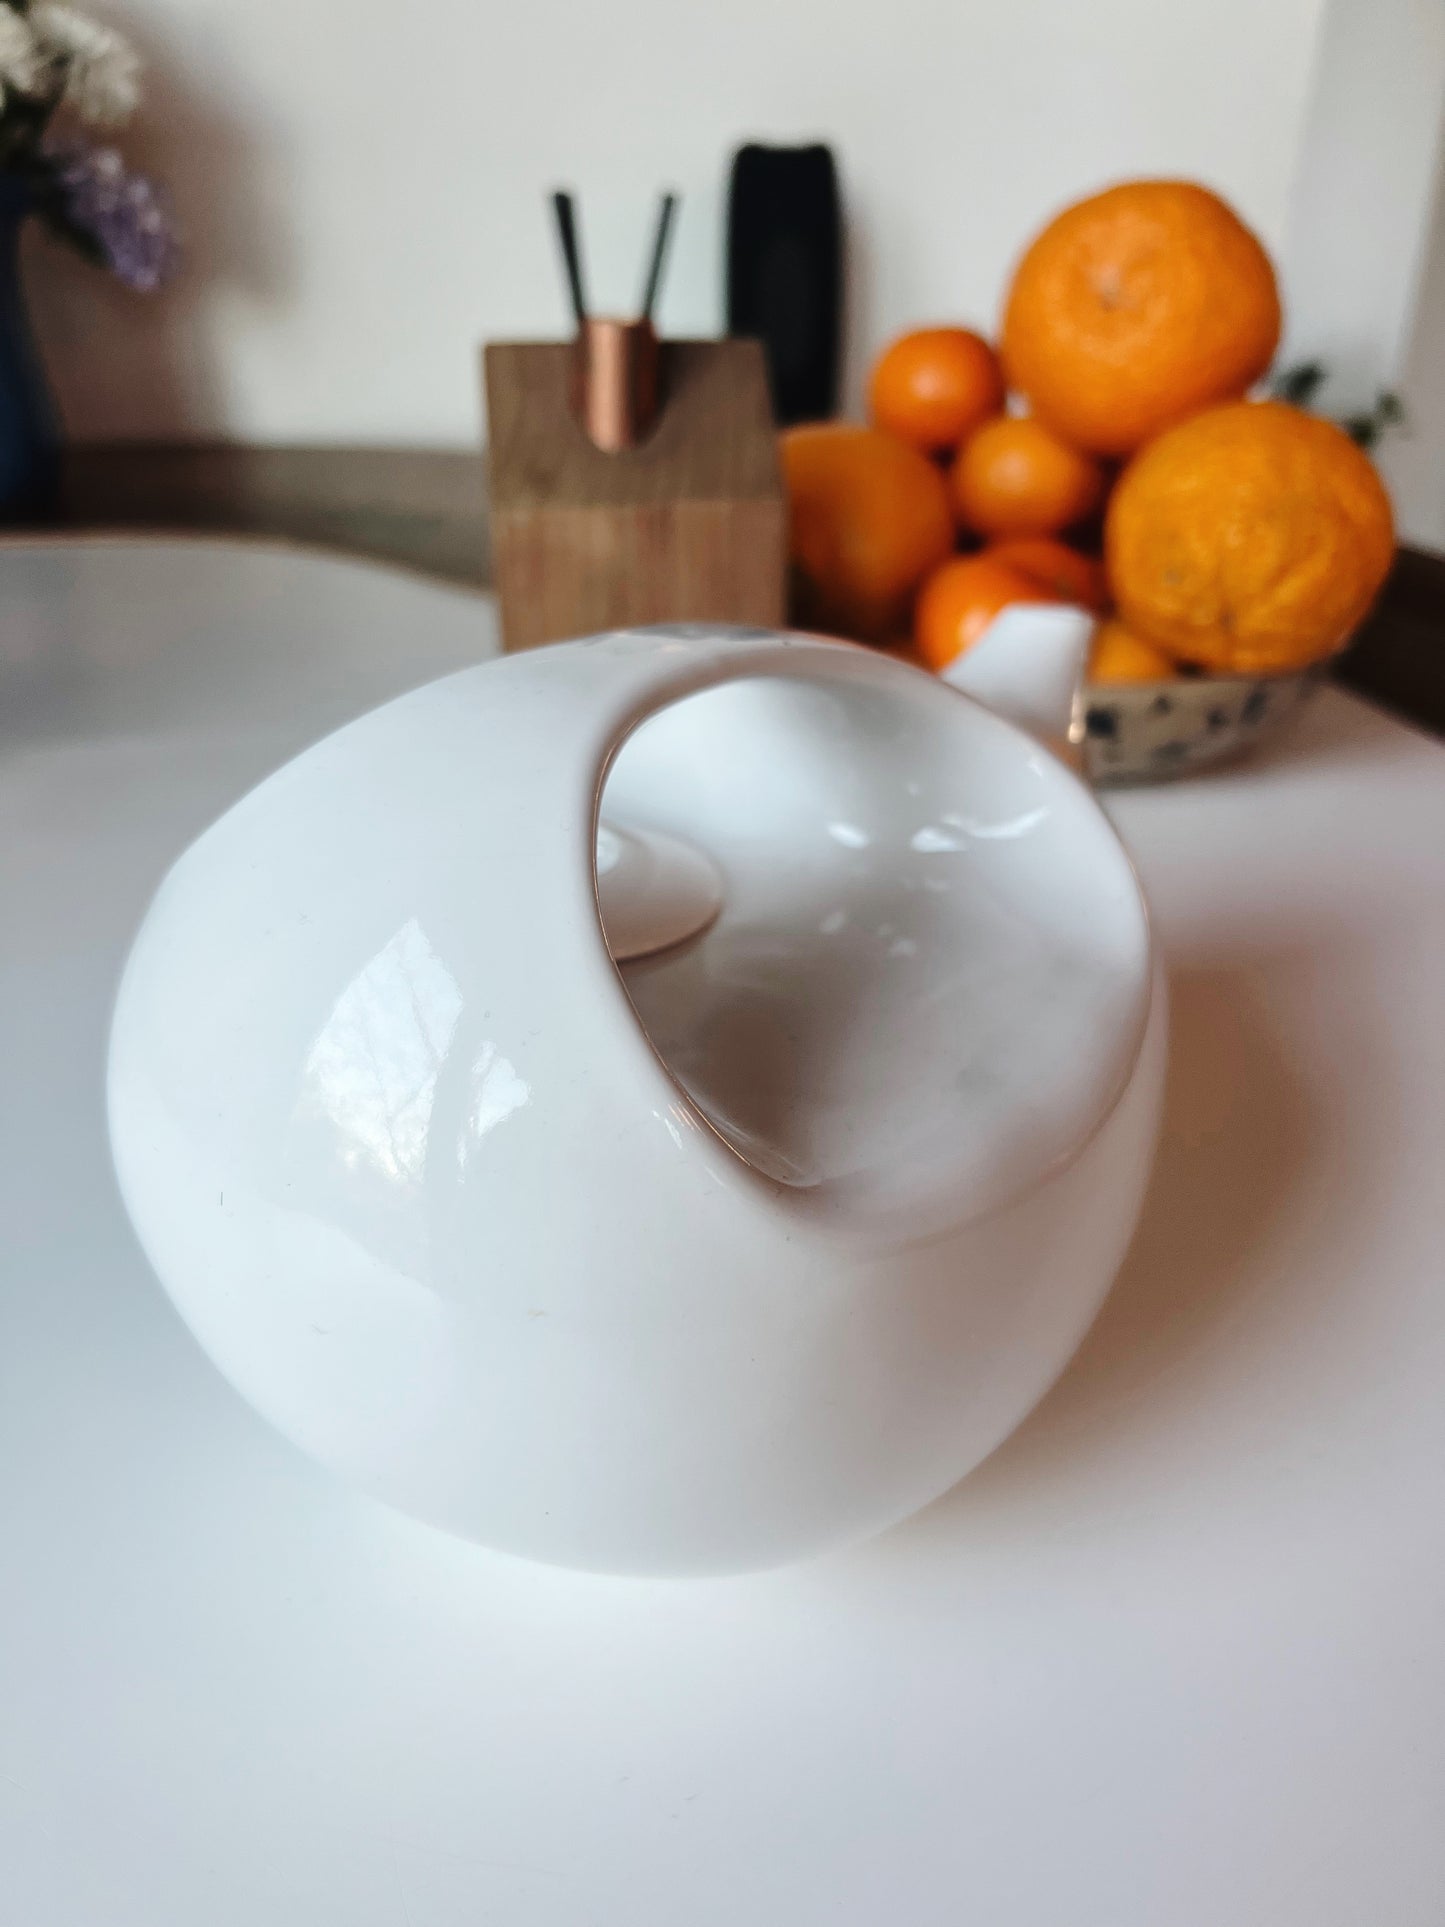 A Modernist Minimalist Tea Pot